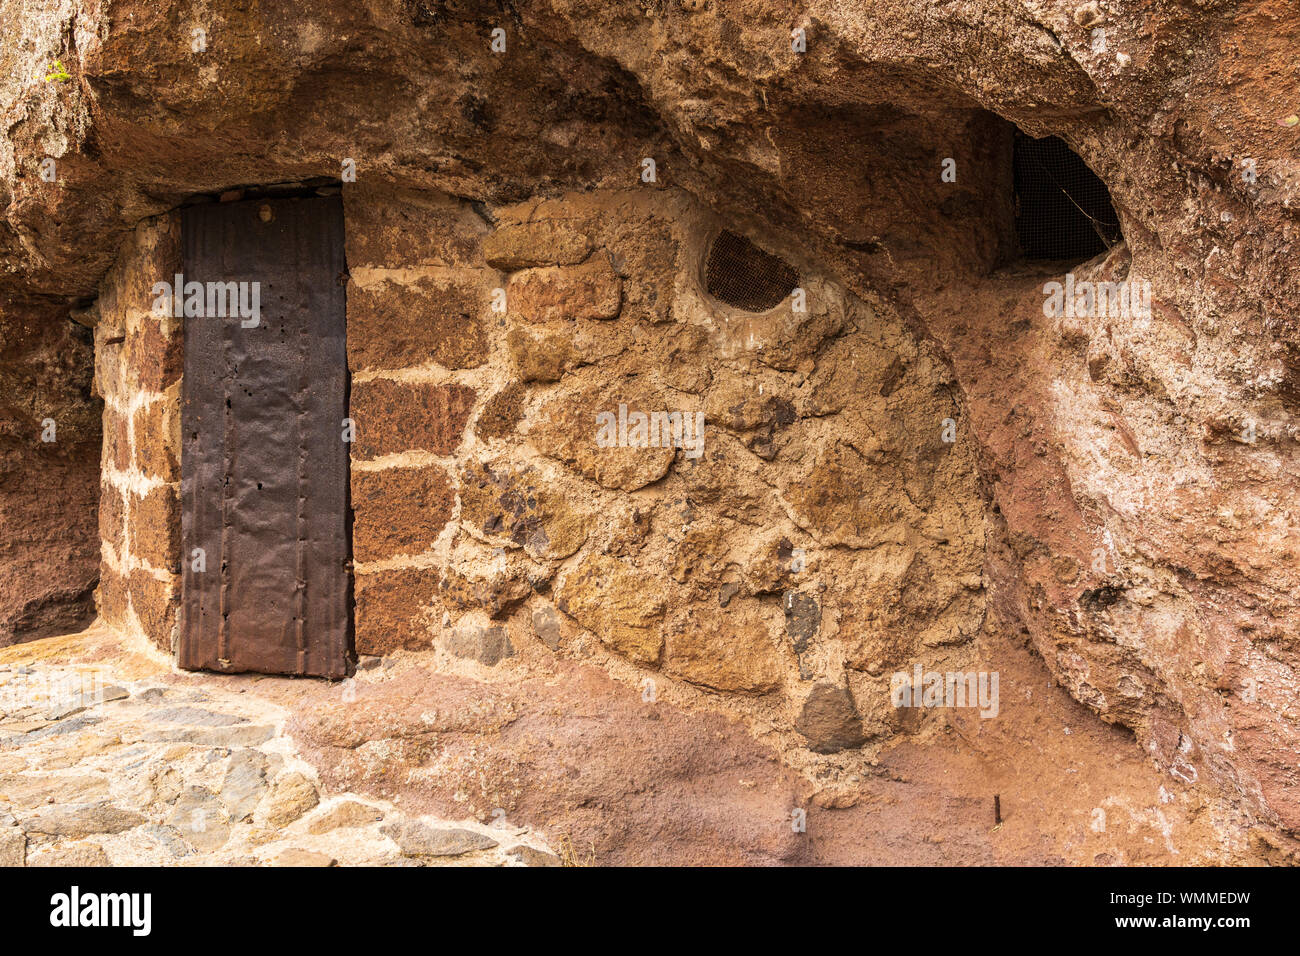 Ancien habitat troglodytique avec porte en métal rouillé, salle de stockage dans la région de barranco seco, Anaga, Tenerife, Canaries, Espagne Banque D'Images